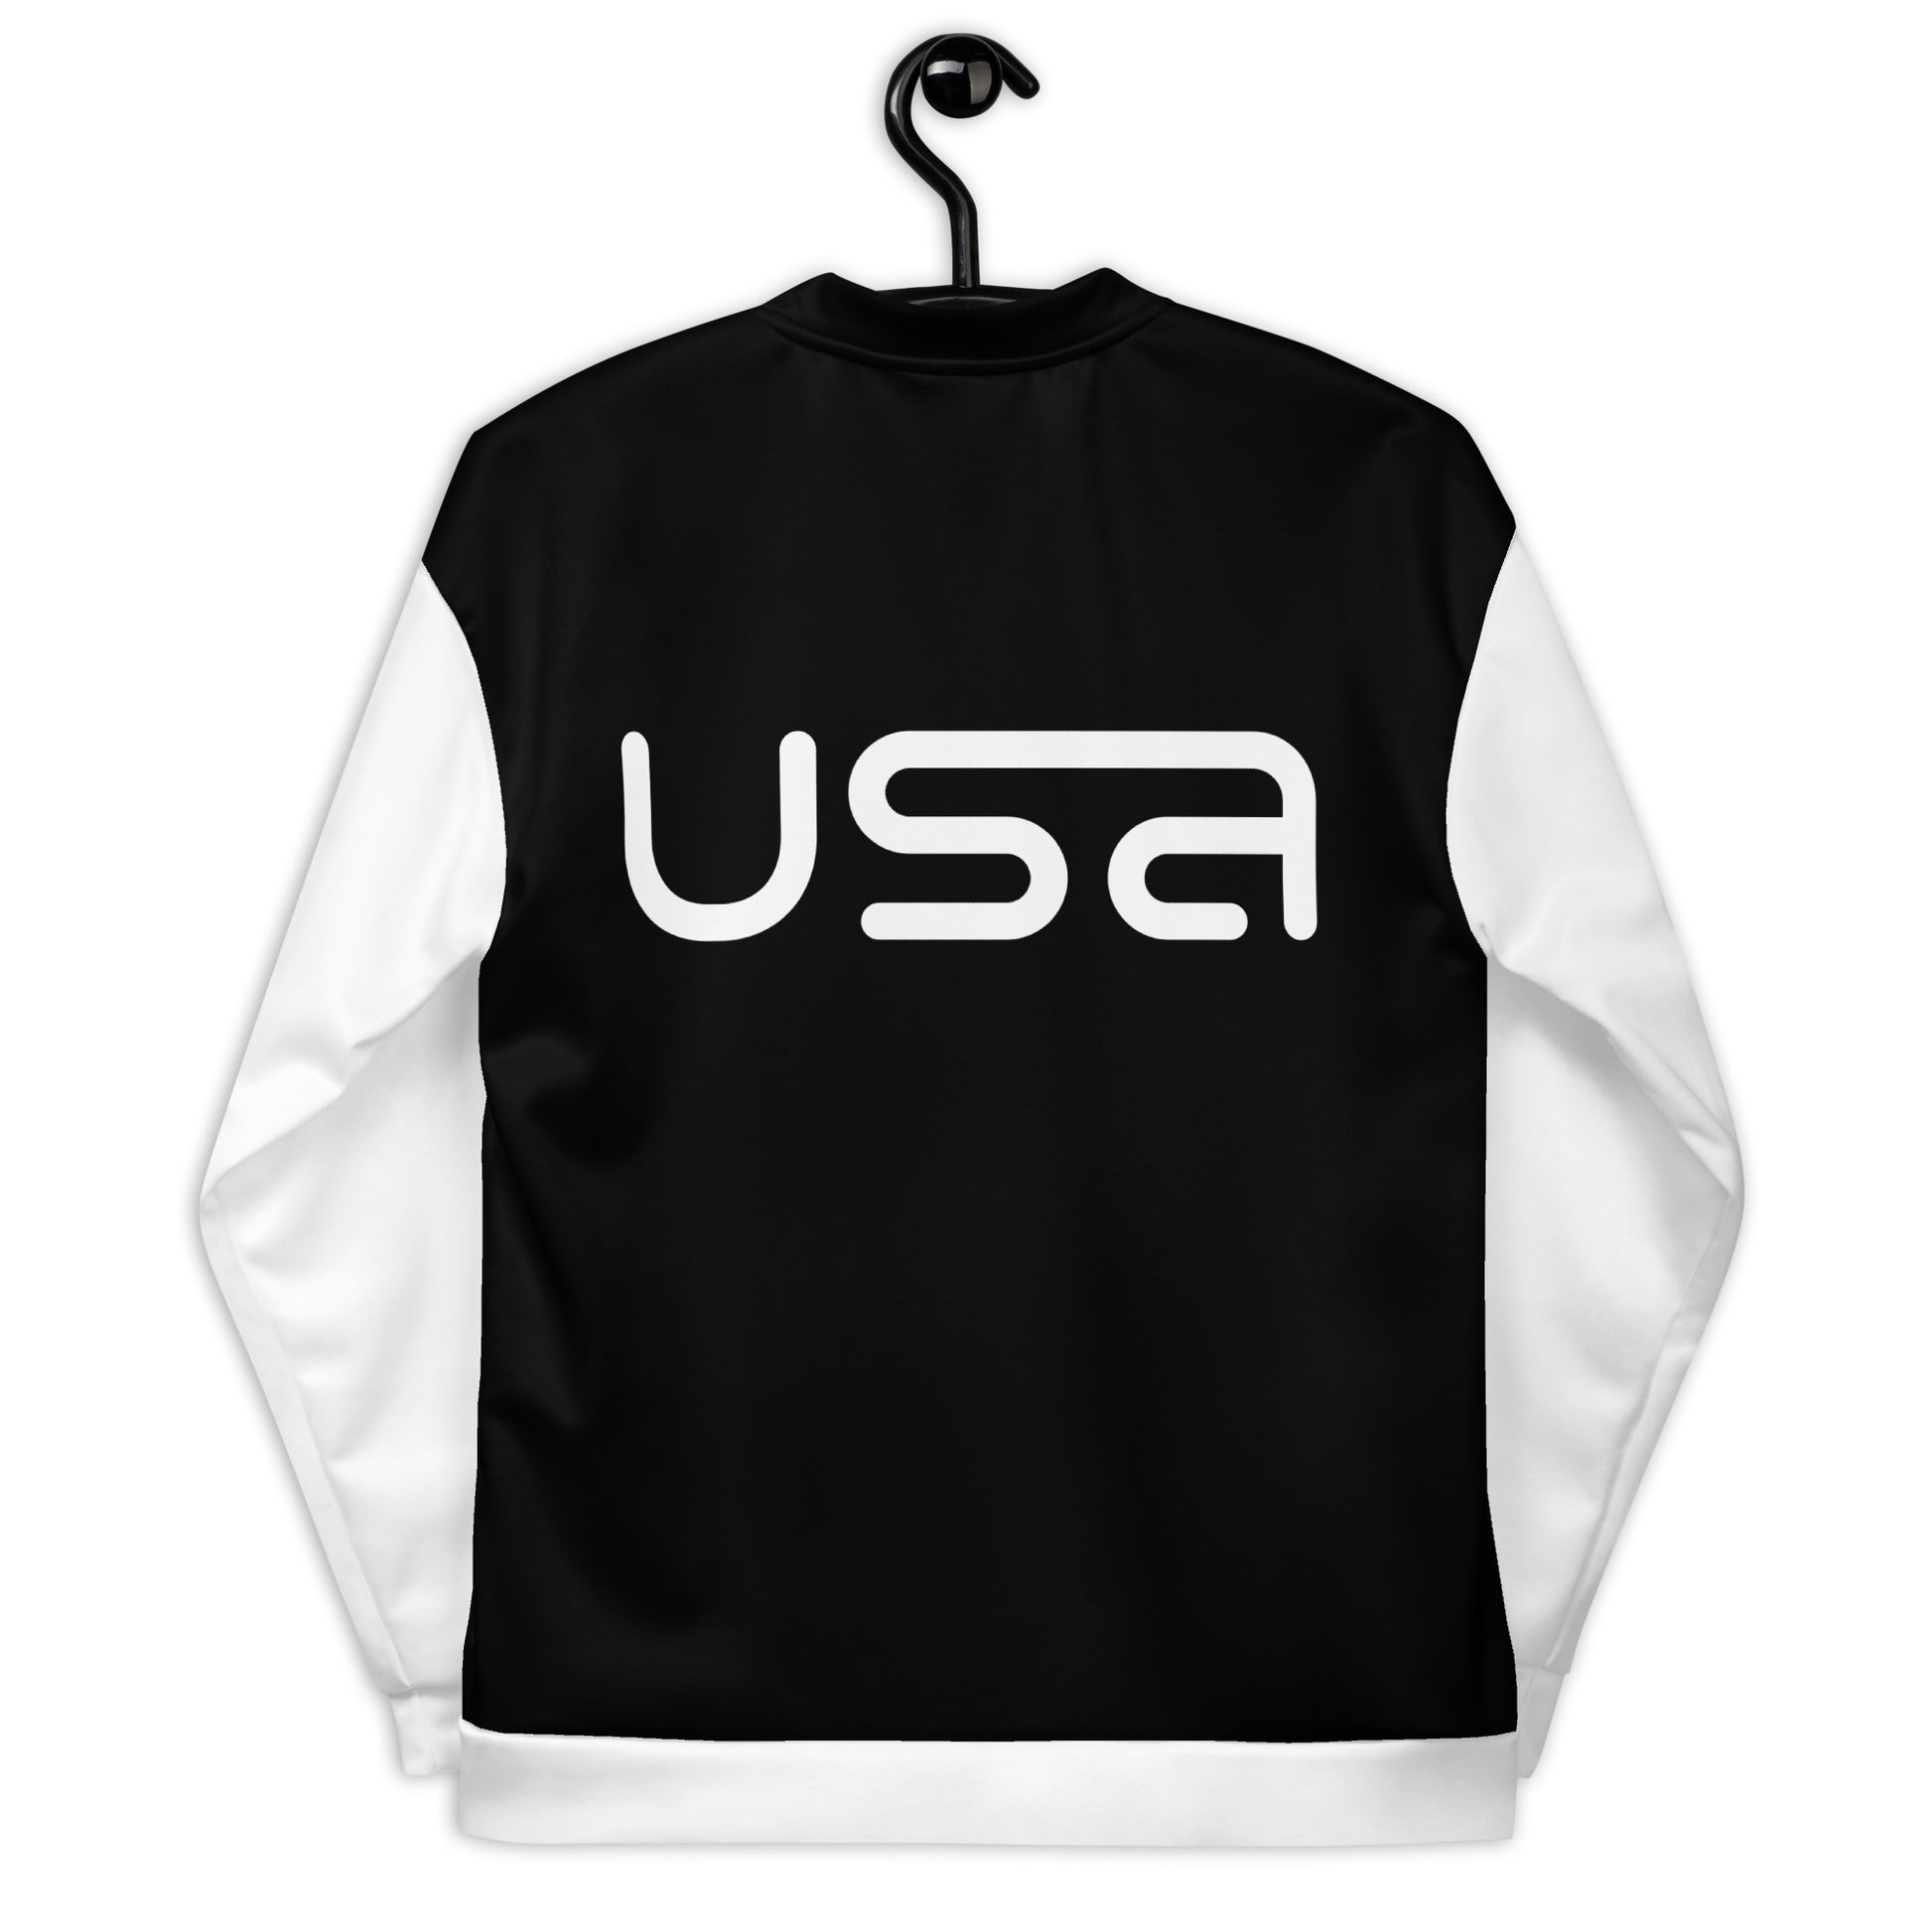 USA Black and White Bomber Jacket